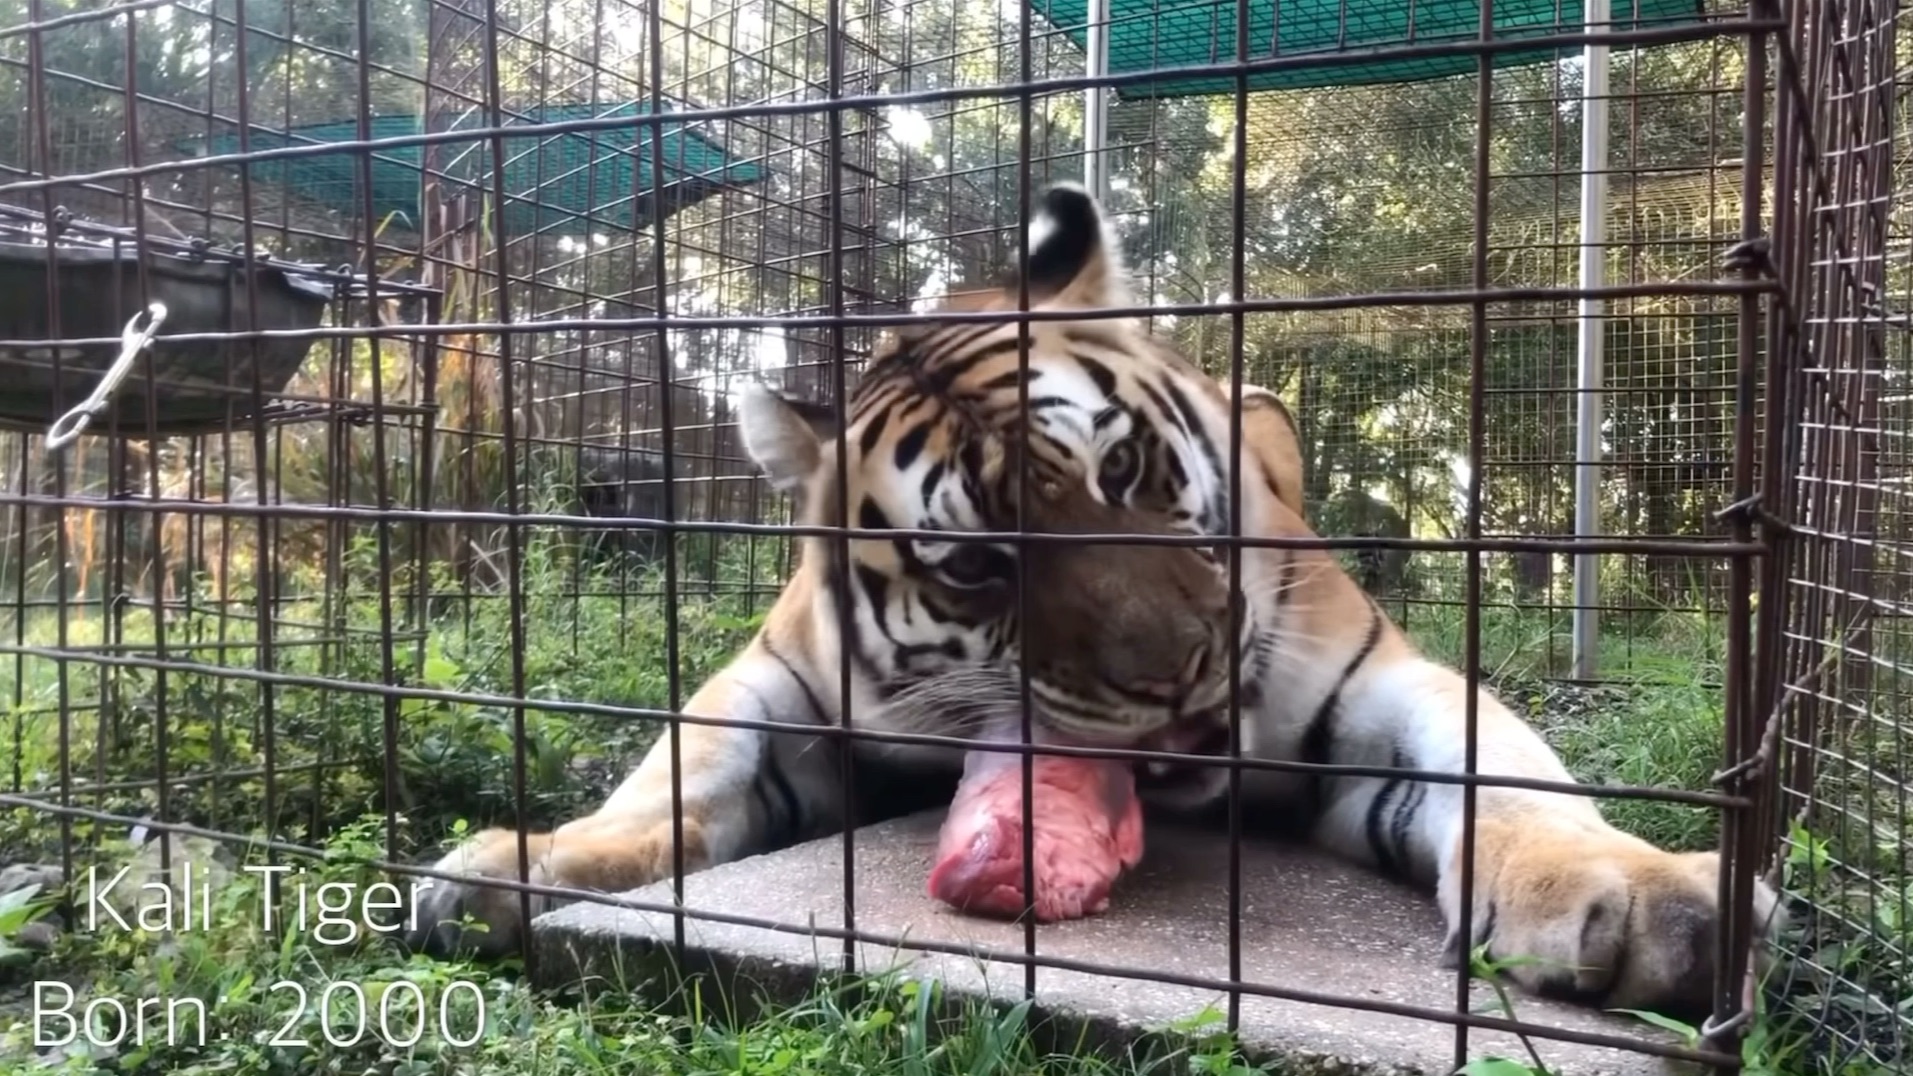 近距离看老虎完整吃一块肉过程